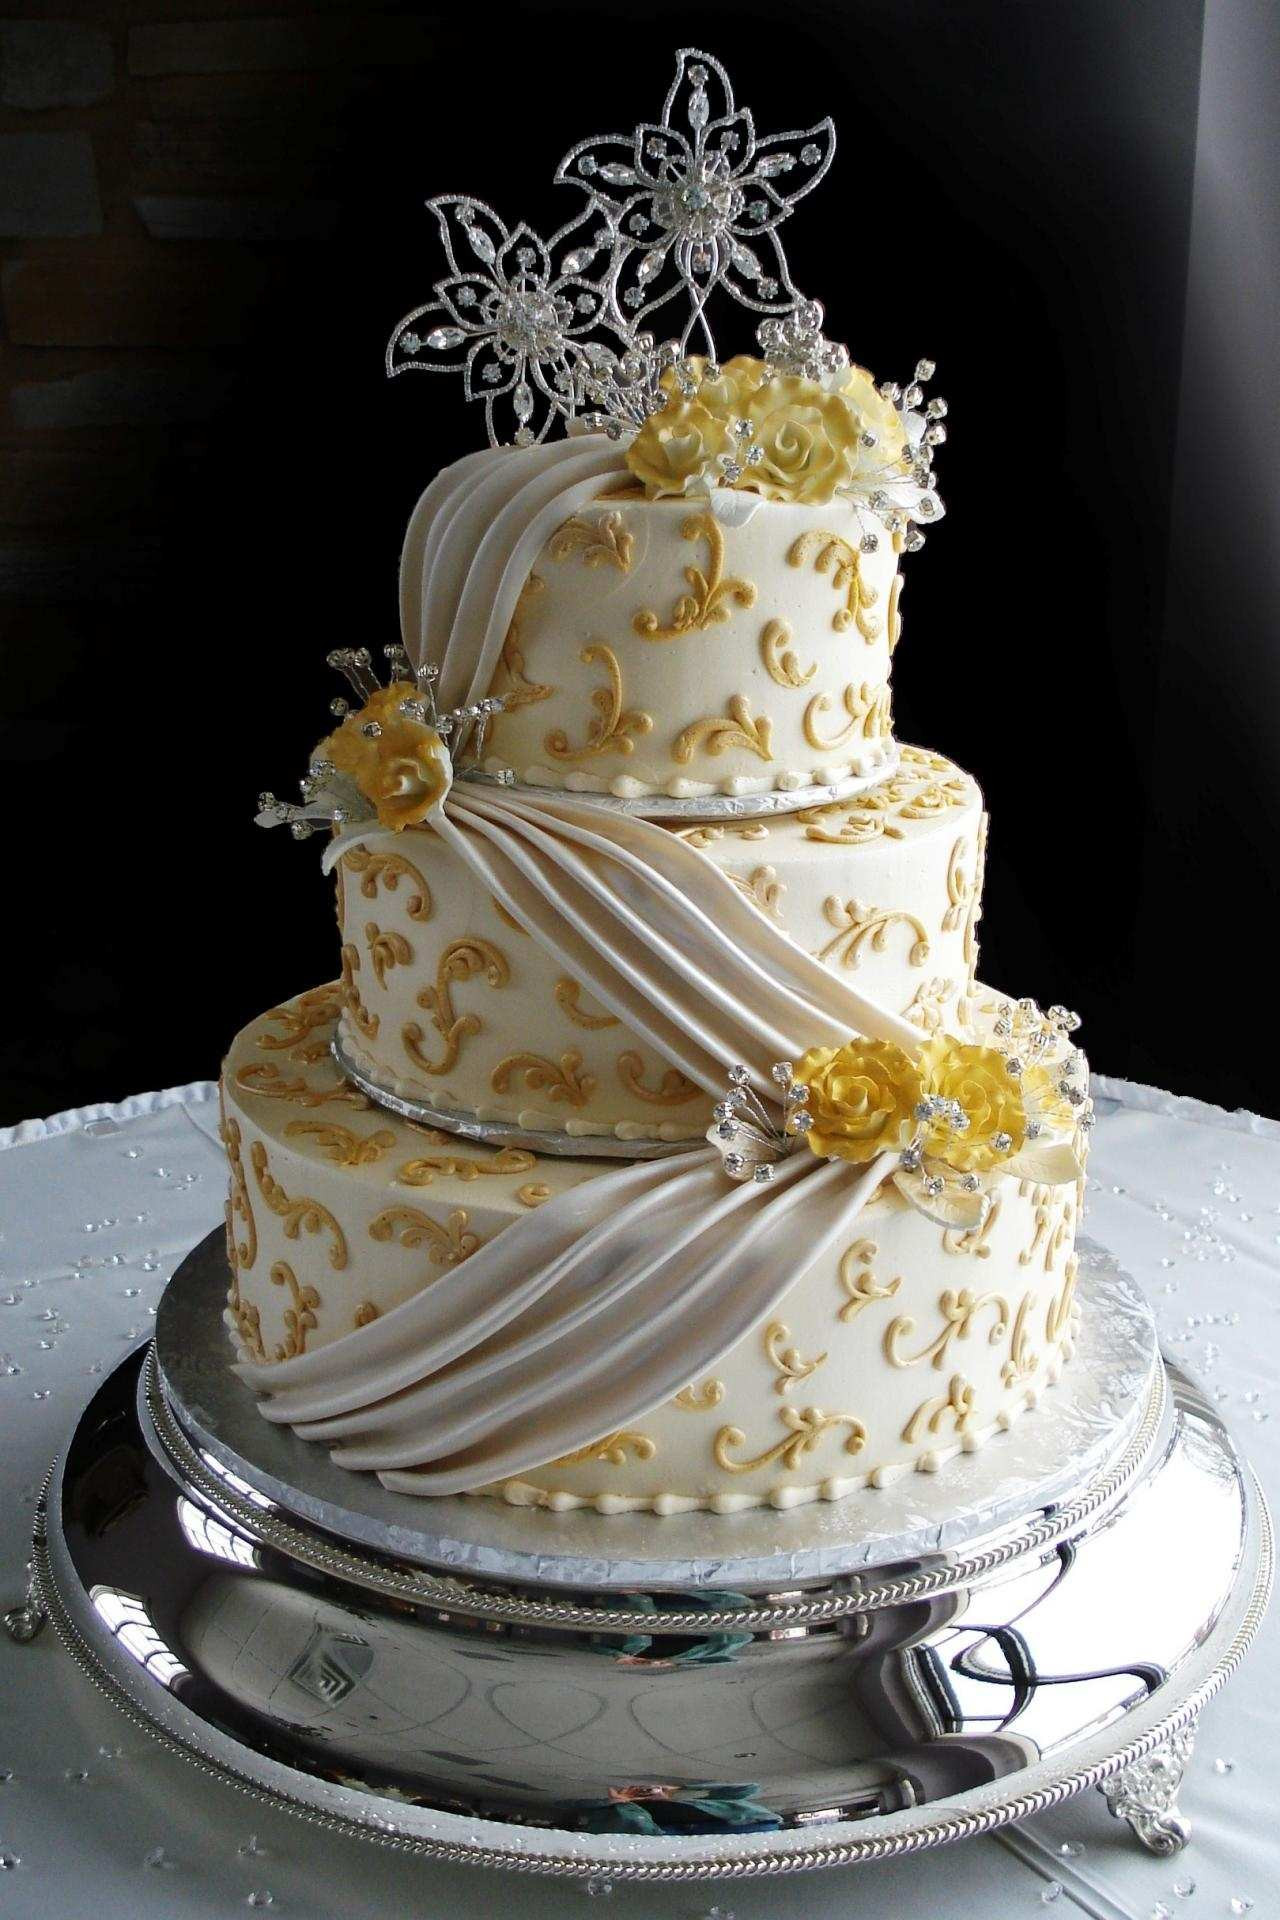 Costco Wedding Cake Prices Fresh 50 Glamorous Costco Wedding Cakes Prices Xi E5197 Of Costco Wedding Cake Prices 